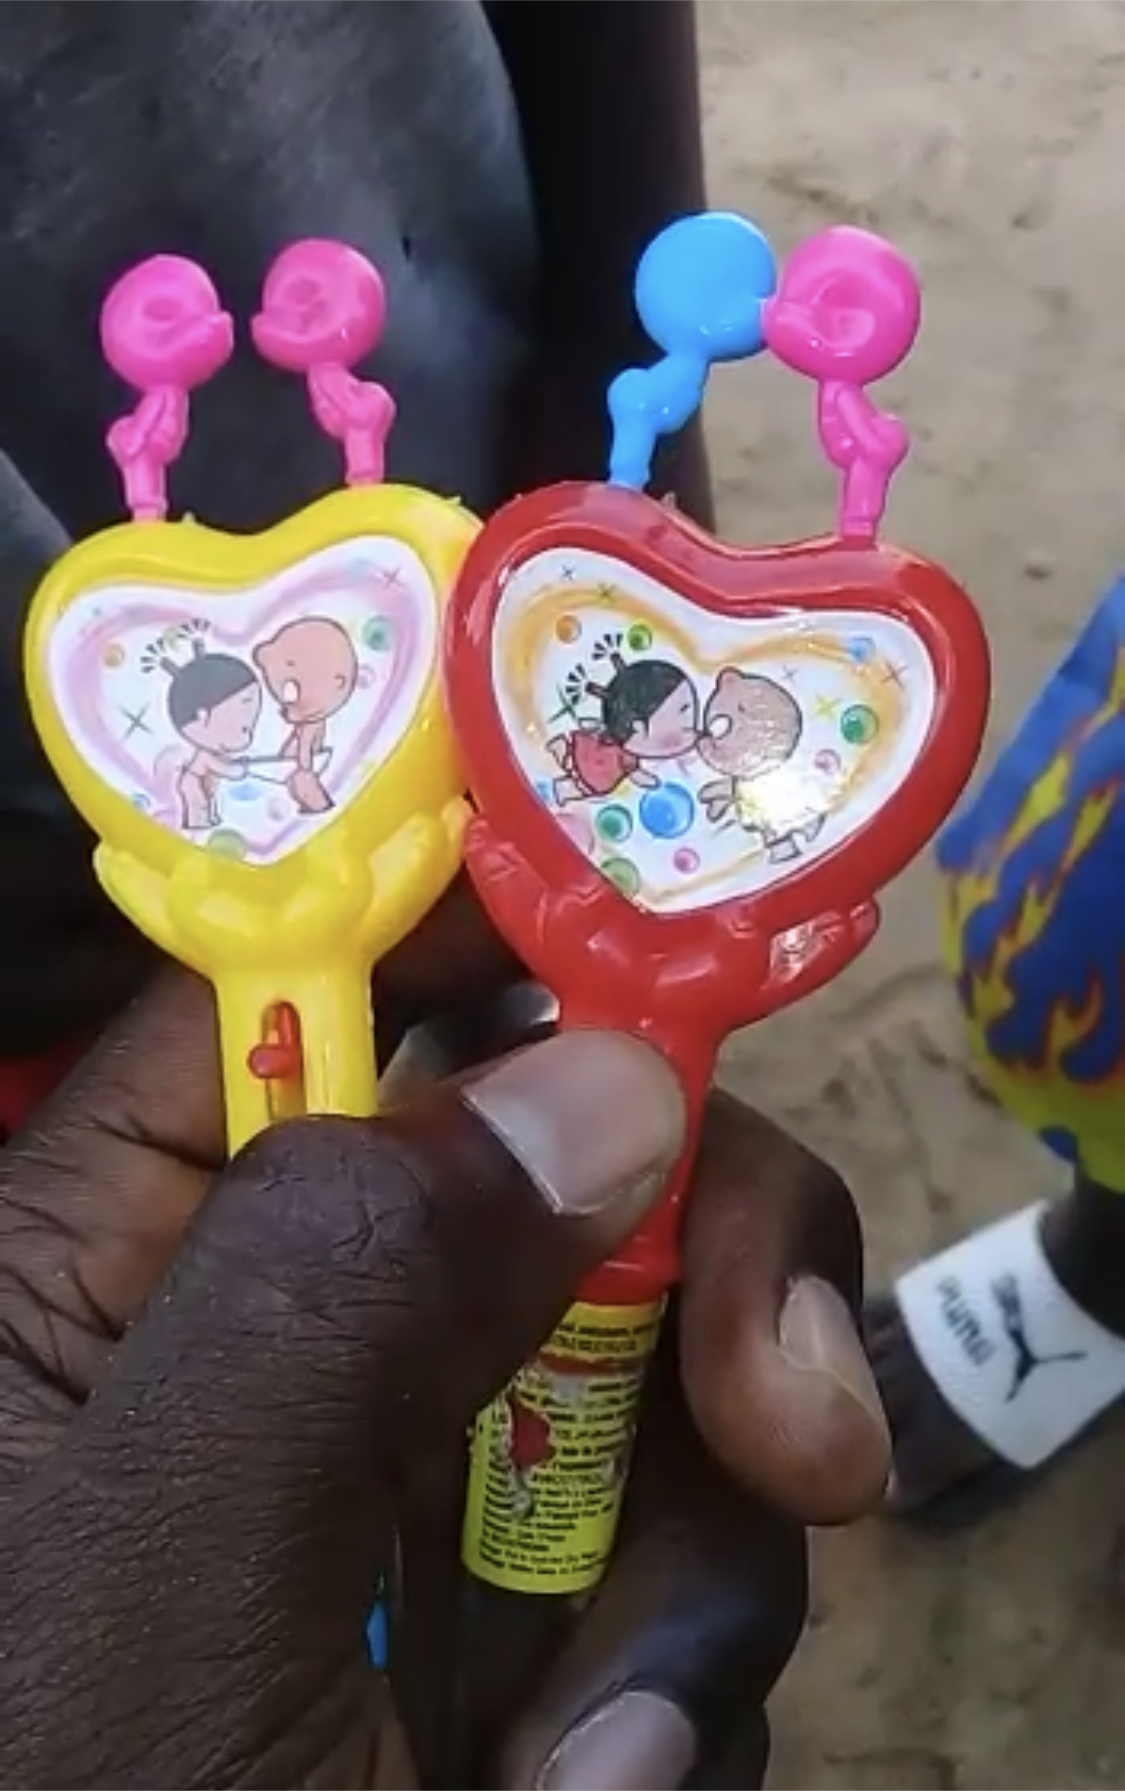 Bonbon sous forme de jouet mettant en scène deux enfants qui s’embrassent: le Ministère du Commerce demande leur retrait du marché